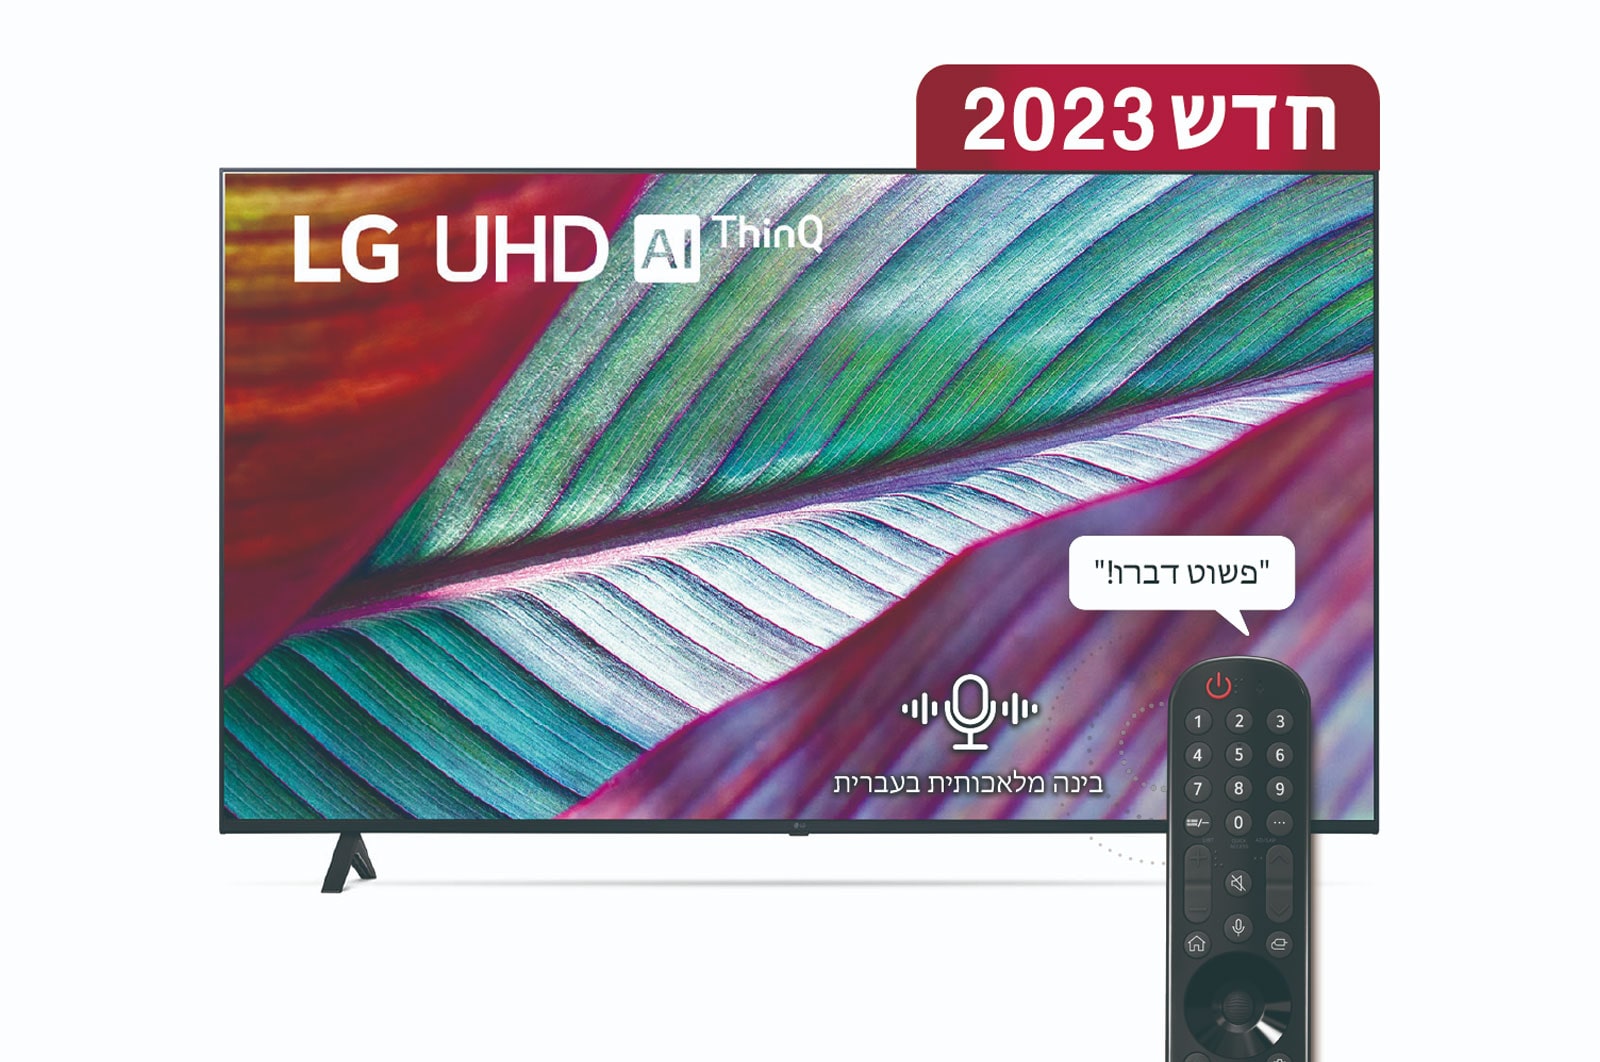 LG טלוויזיה חכמה LG UHD UR78 בגודל 65 אינץ‘ וברזולוציית 4K, 2023, מבט קדמי של טלוויזיית LG UHDl, 65UR78006LL